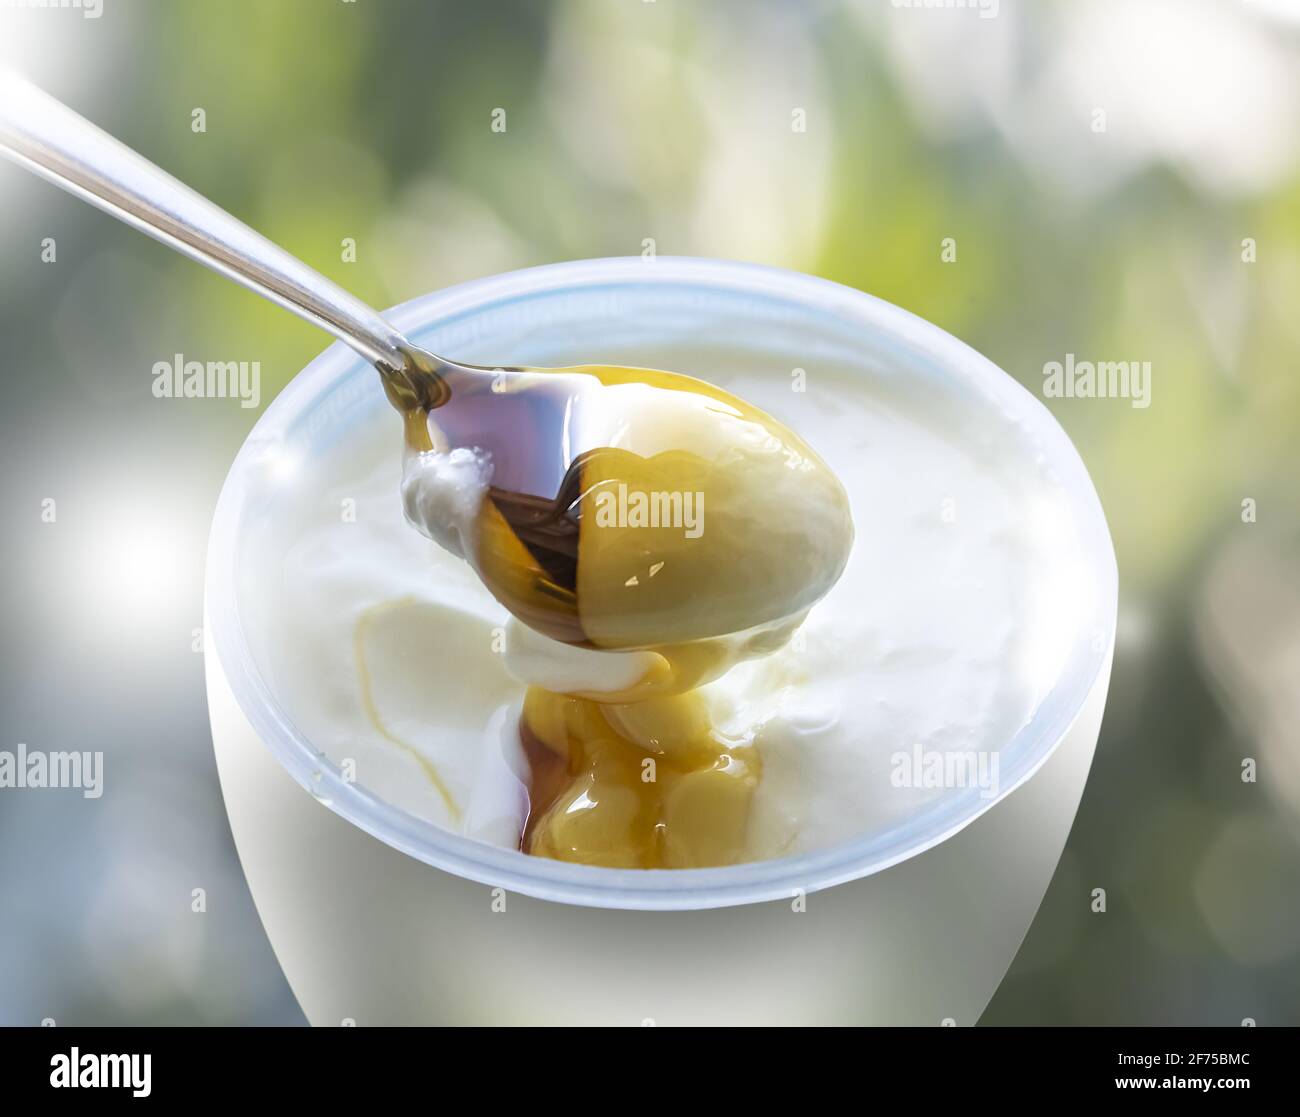 Foto para Publicidad : yogur griego con cuchara llena de miel invitando a comer sobre fondo bokeh borroso. Espacio de copia. Foto de stock